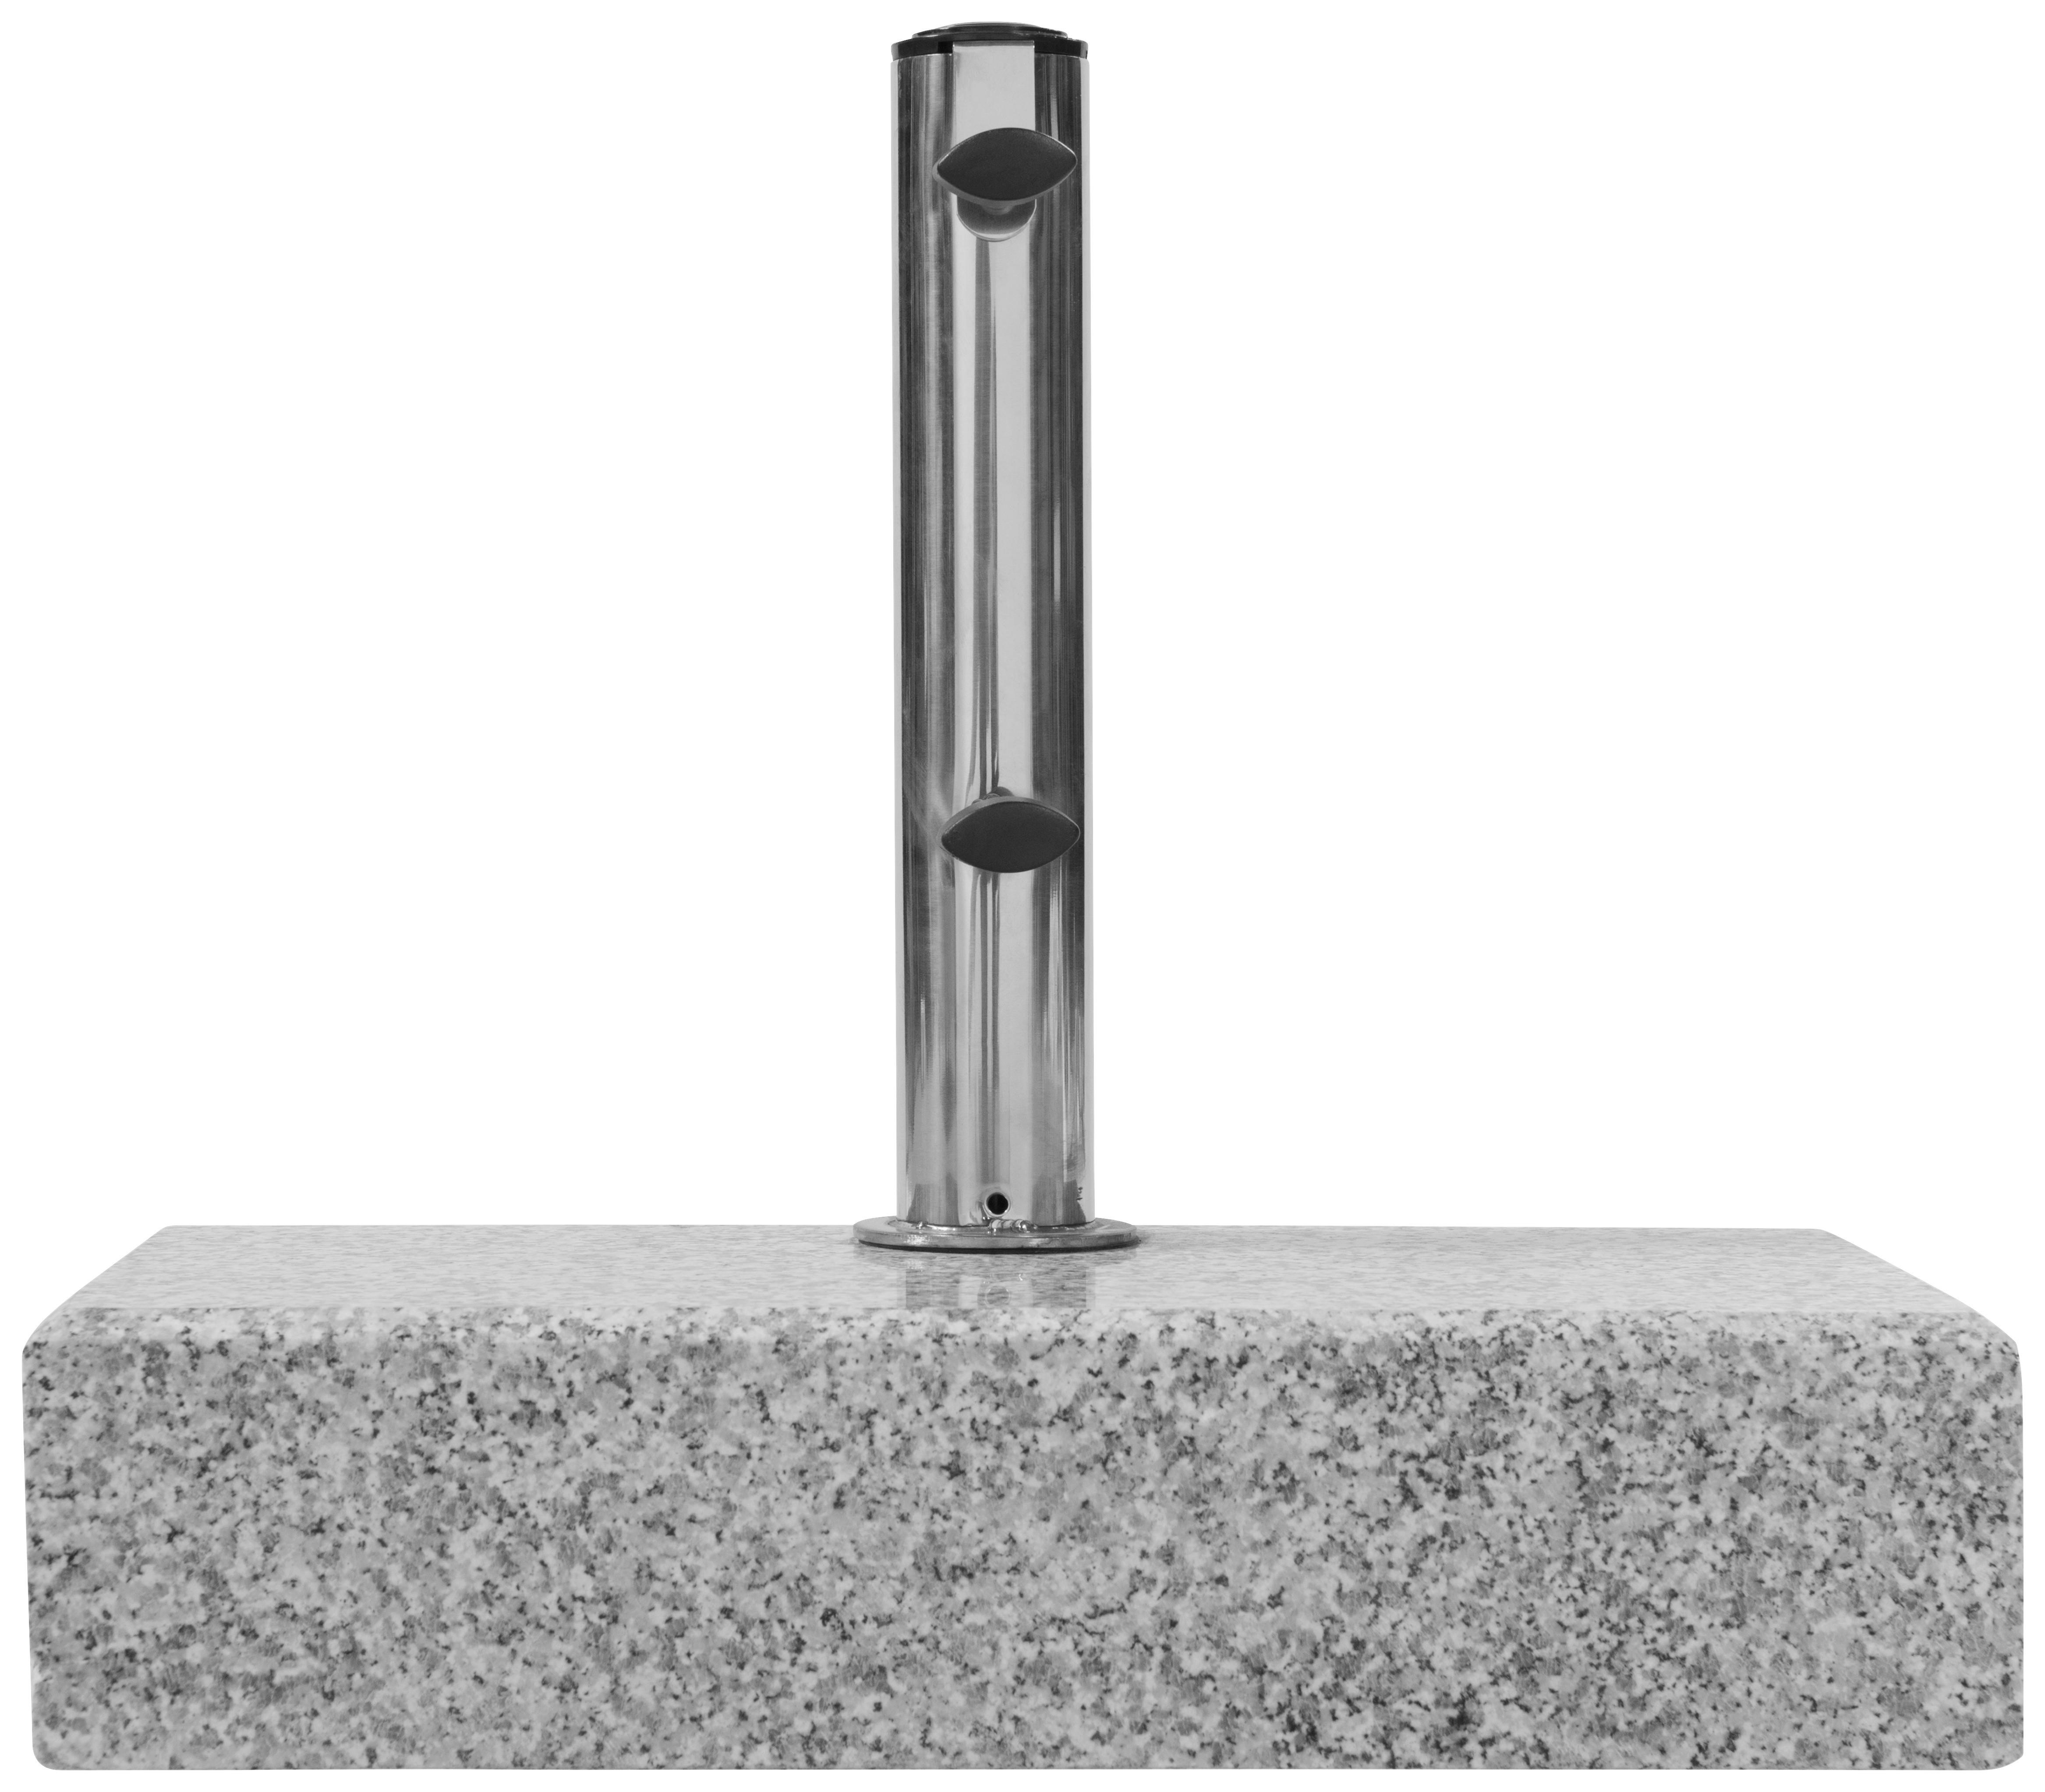 SONNENSCHIRMSTÄNDER  - Beige/Grau, Basics, Stein/Metall (45/10/22cm) - Doppler